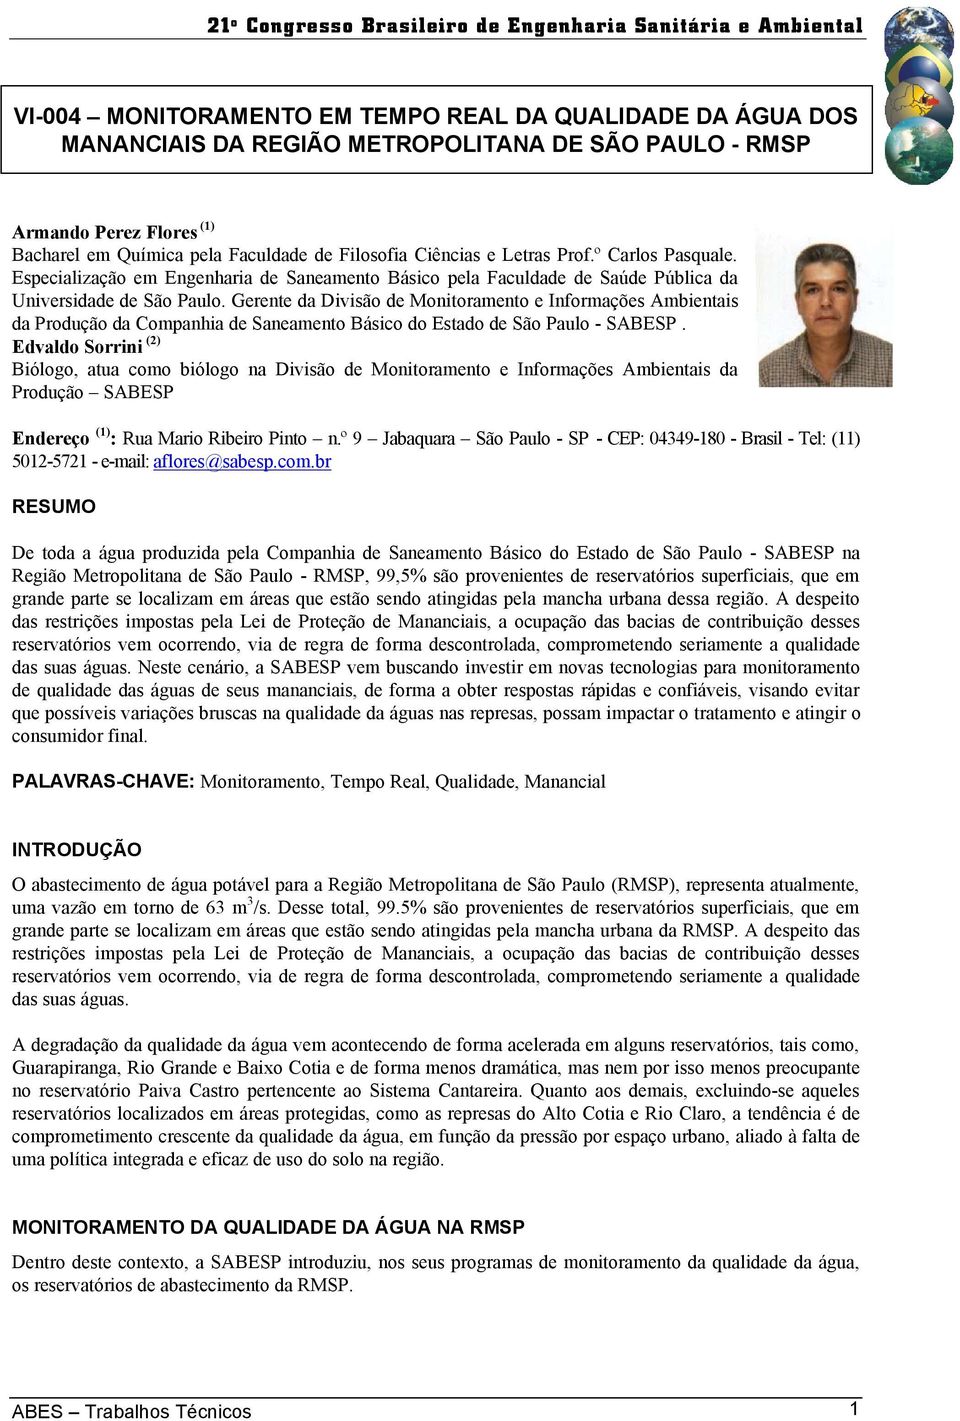 Gerente da Divisão de Monitoramento e Informações Ambientais da Produção da Companhia de Saneamento Básico do Estado de São Paulo - SABESP.